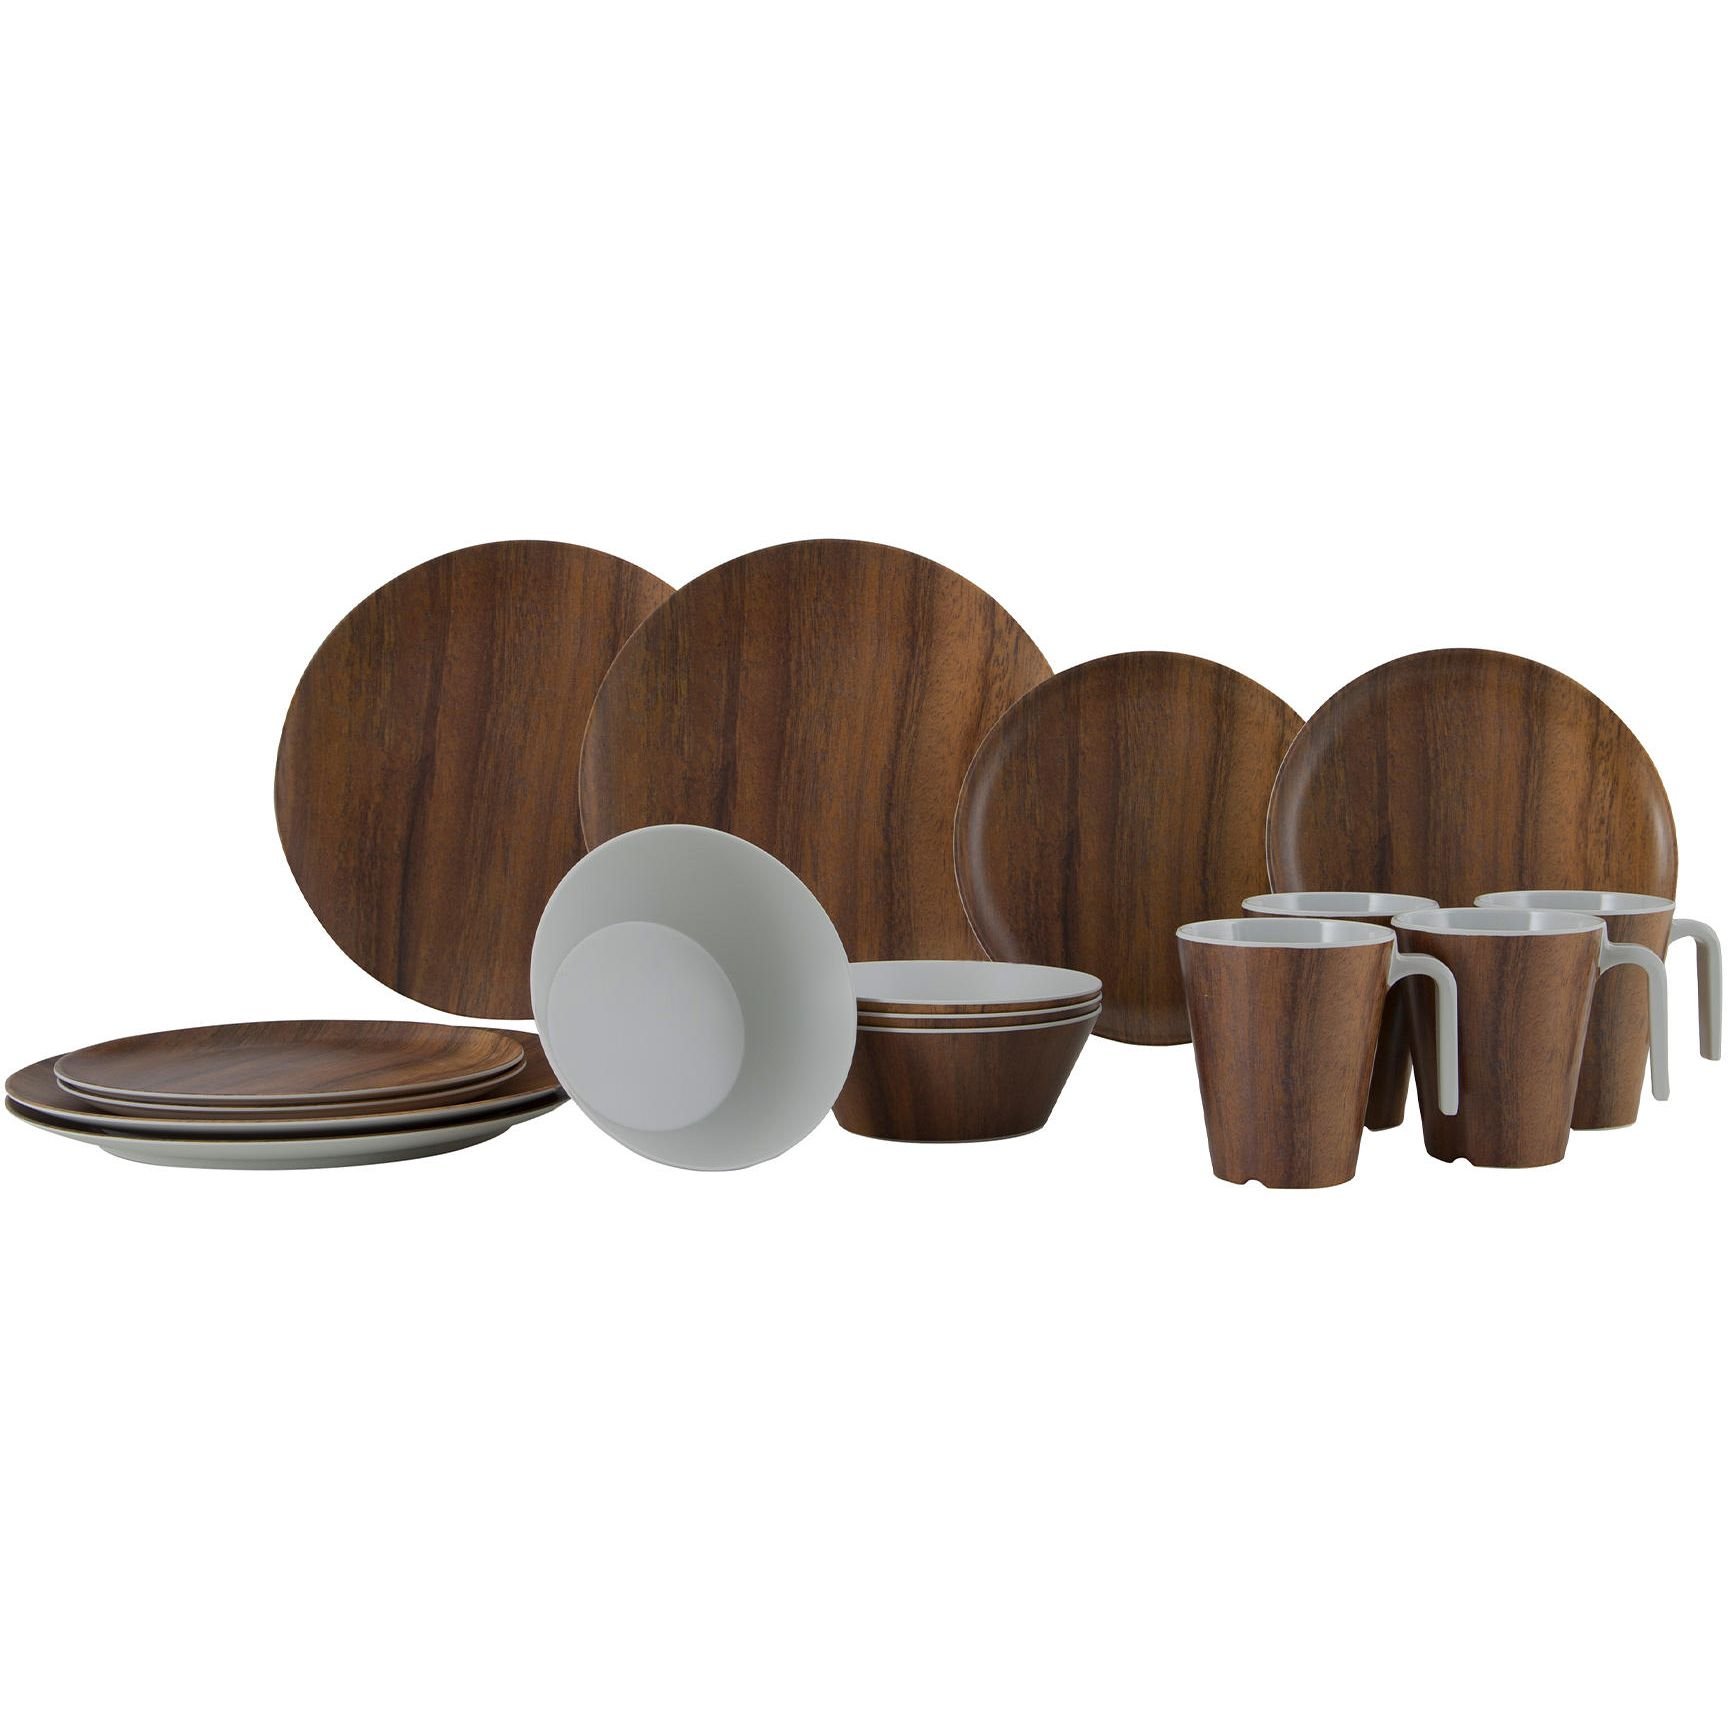 Сервиз столовый Gimex Tableware Nature Wood меламин 16 предметов 4 персоны коричневый (6913100) - фото 1